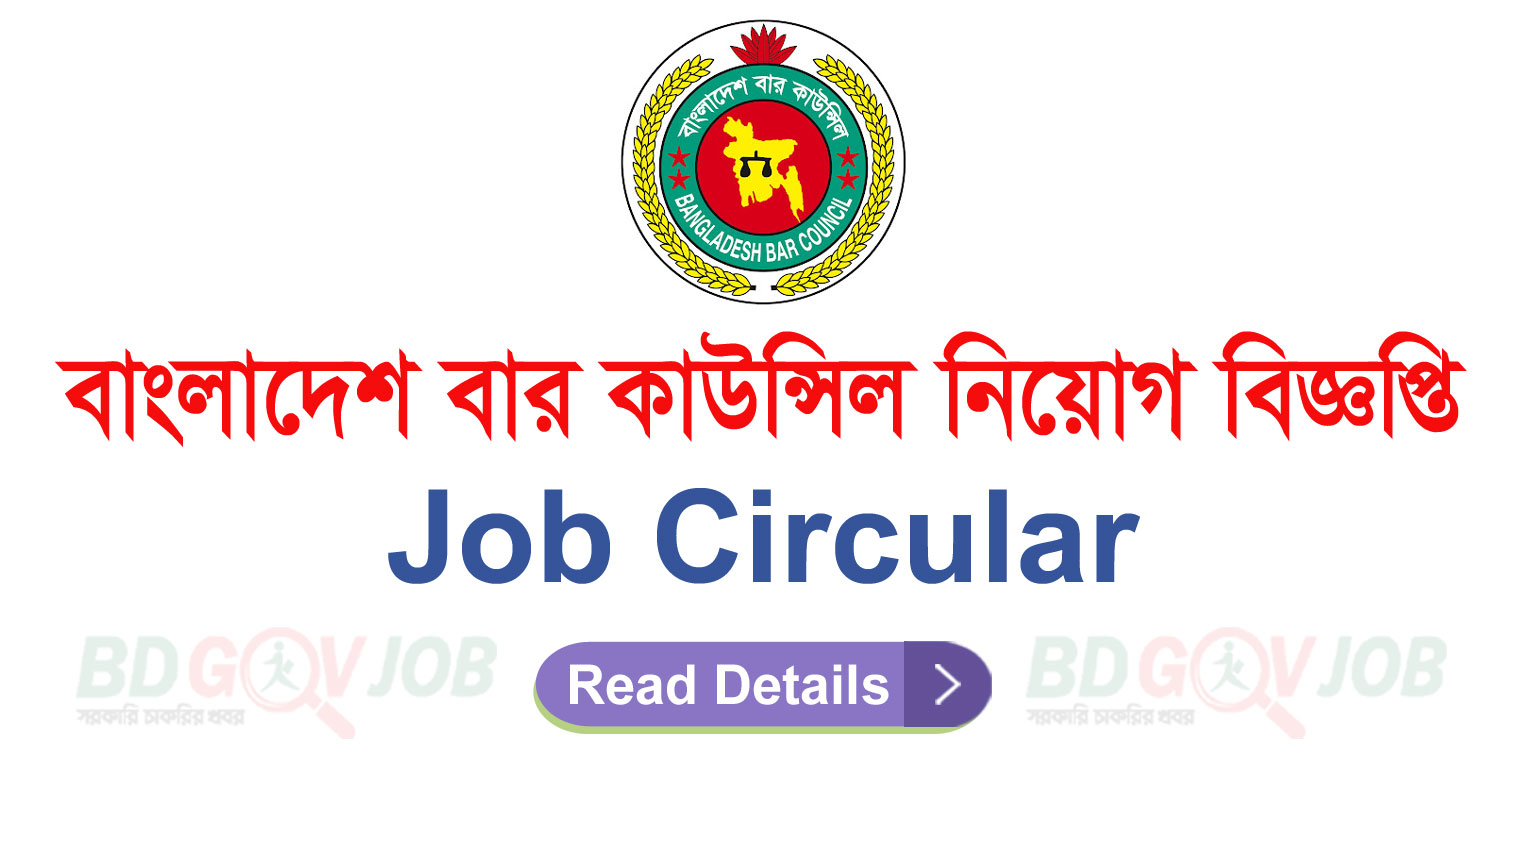 Bangladesh Bar Council Job Circular-2022